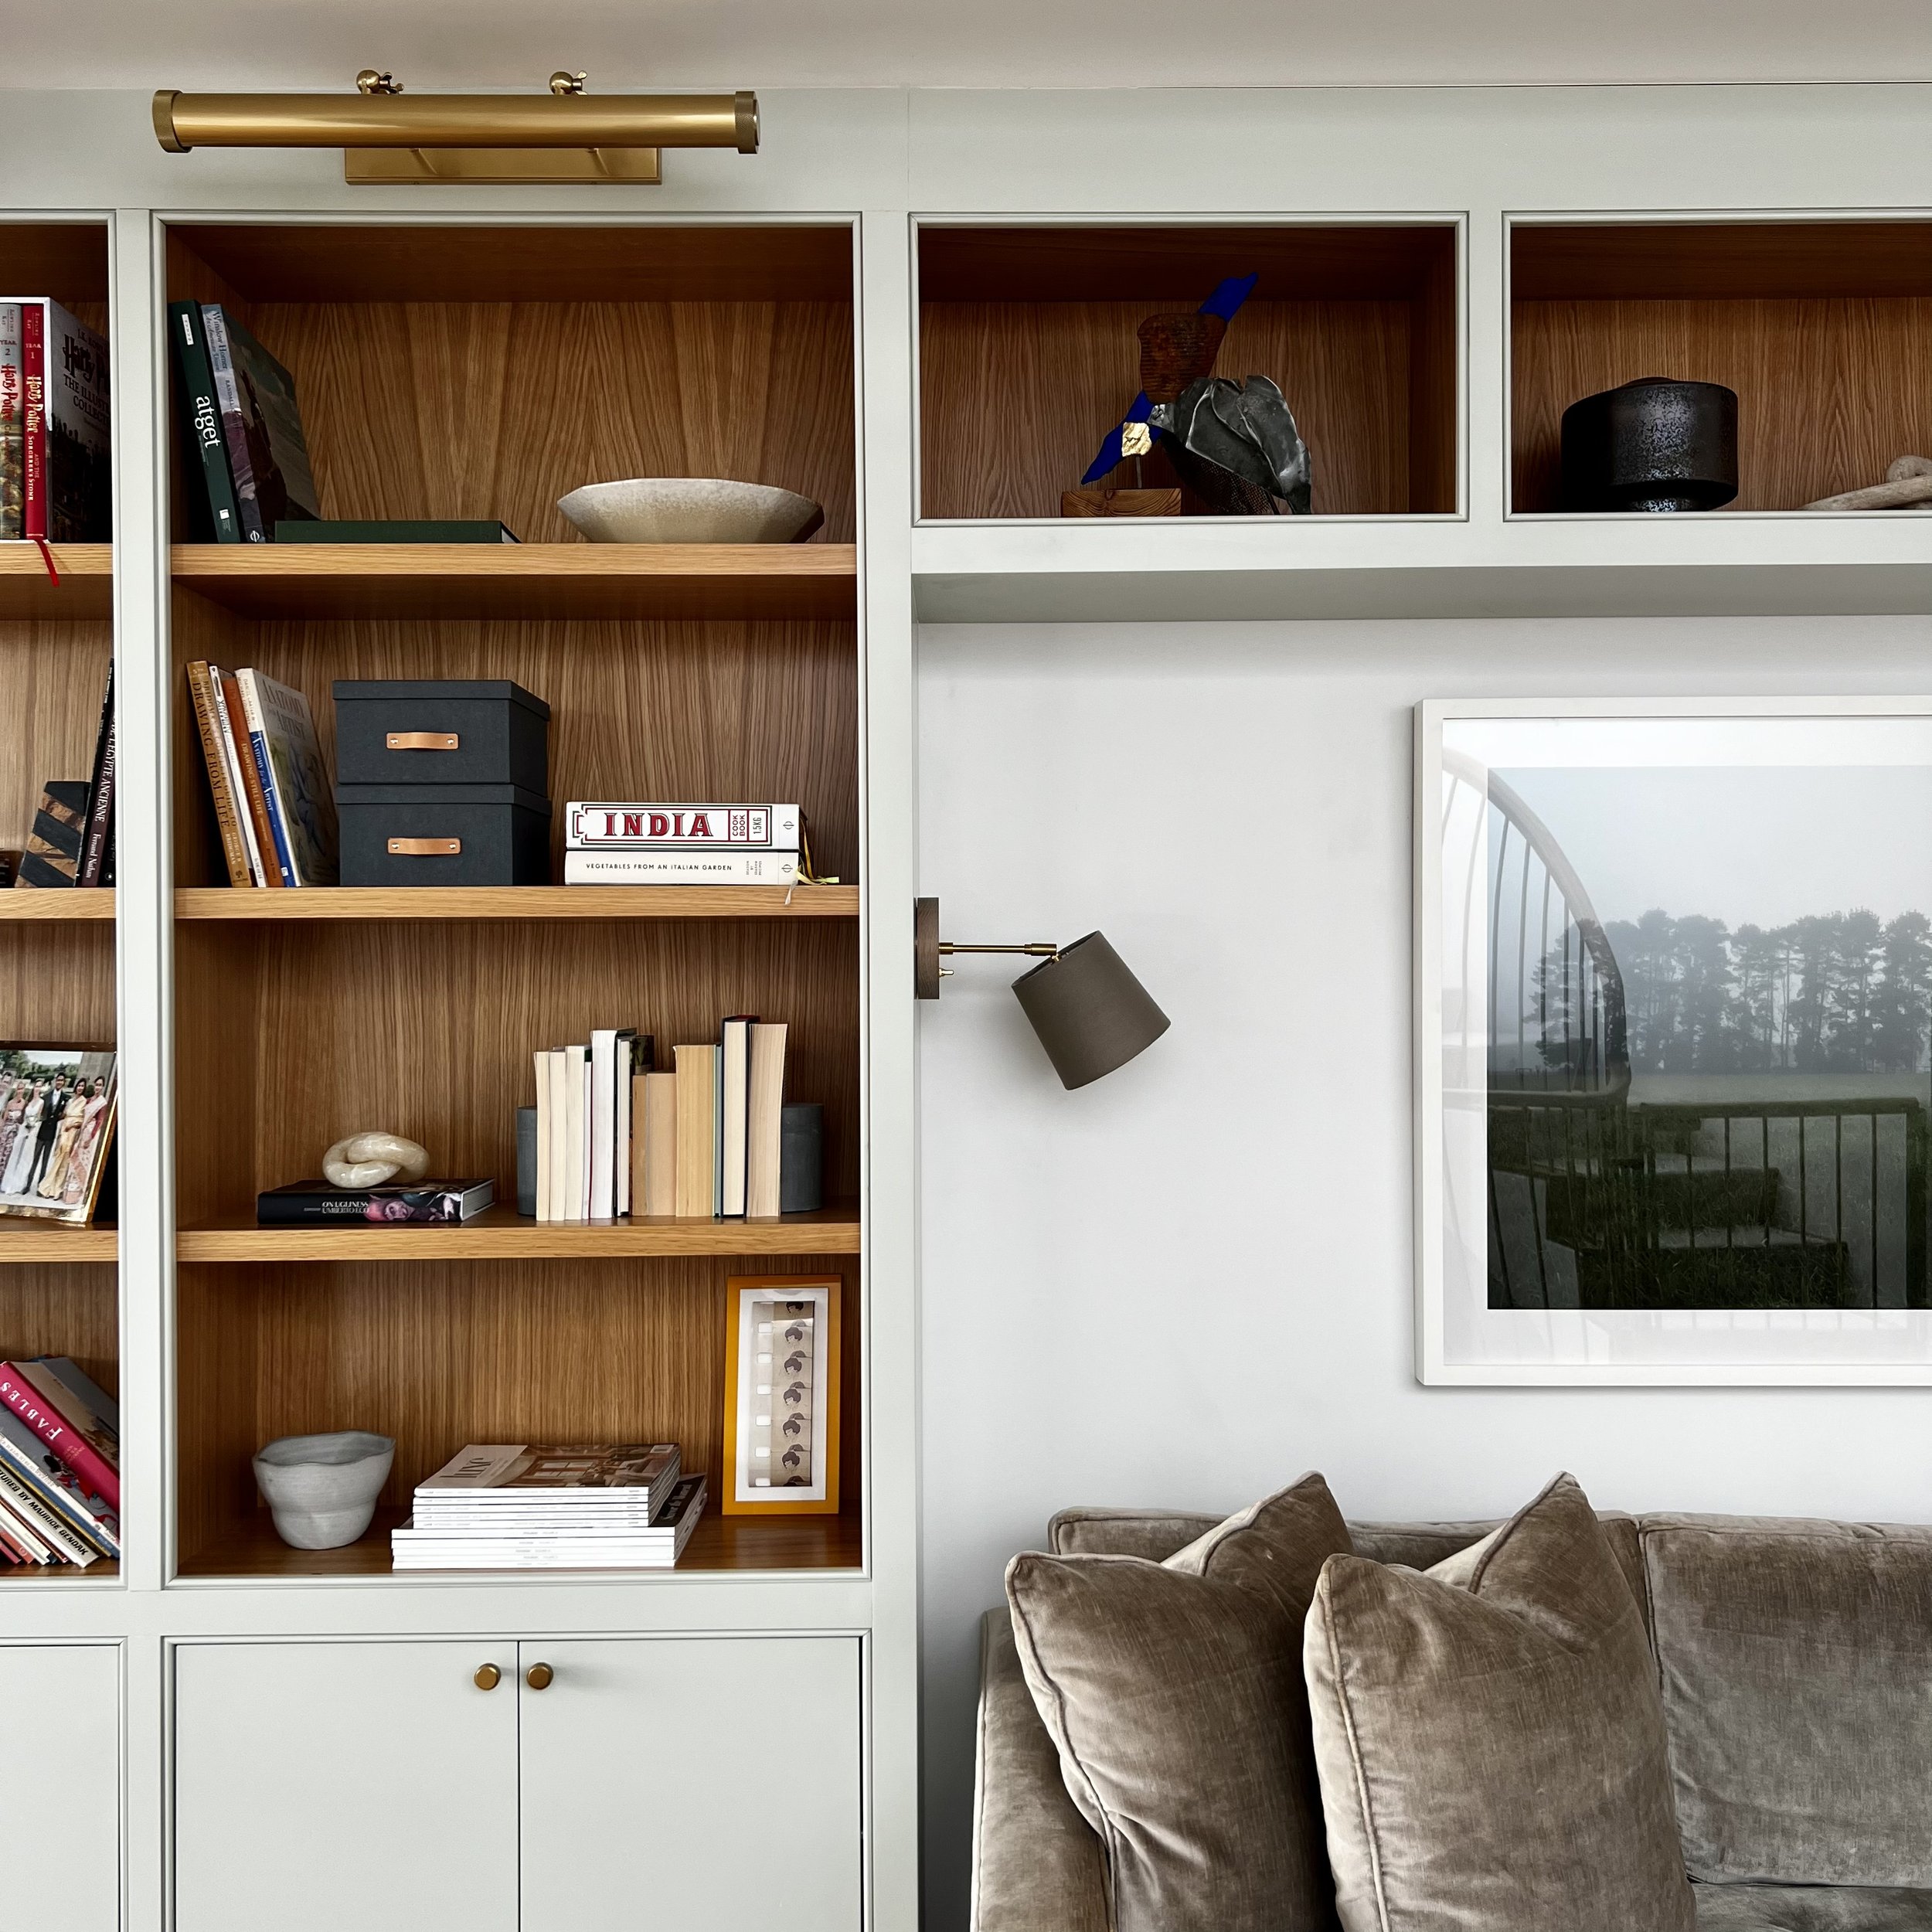 Luxuriously designed wooden bookshelf